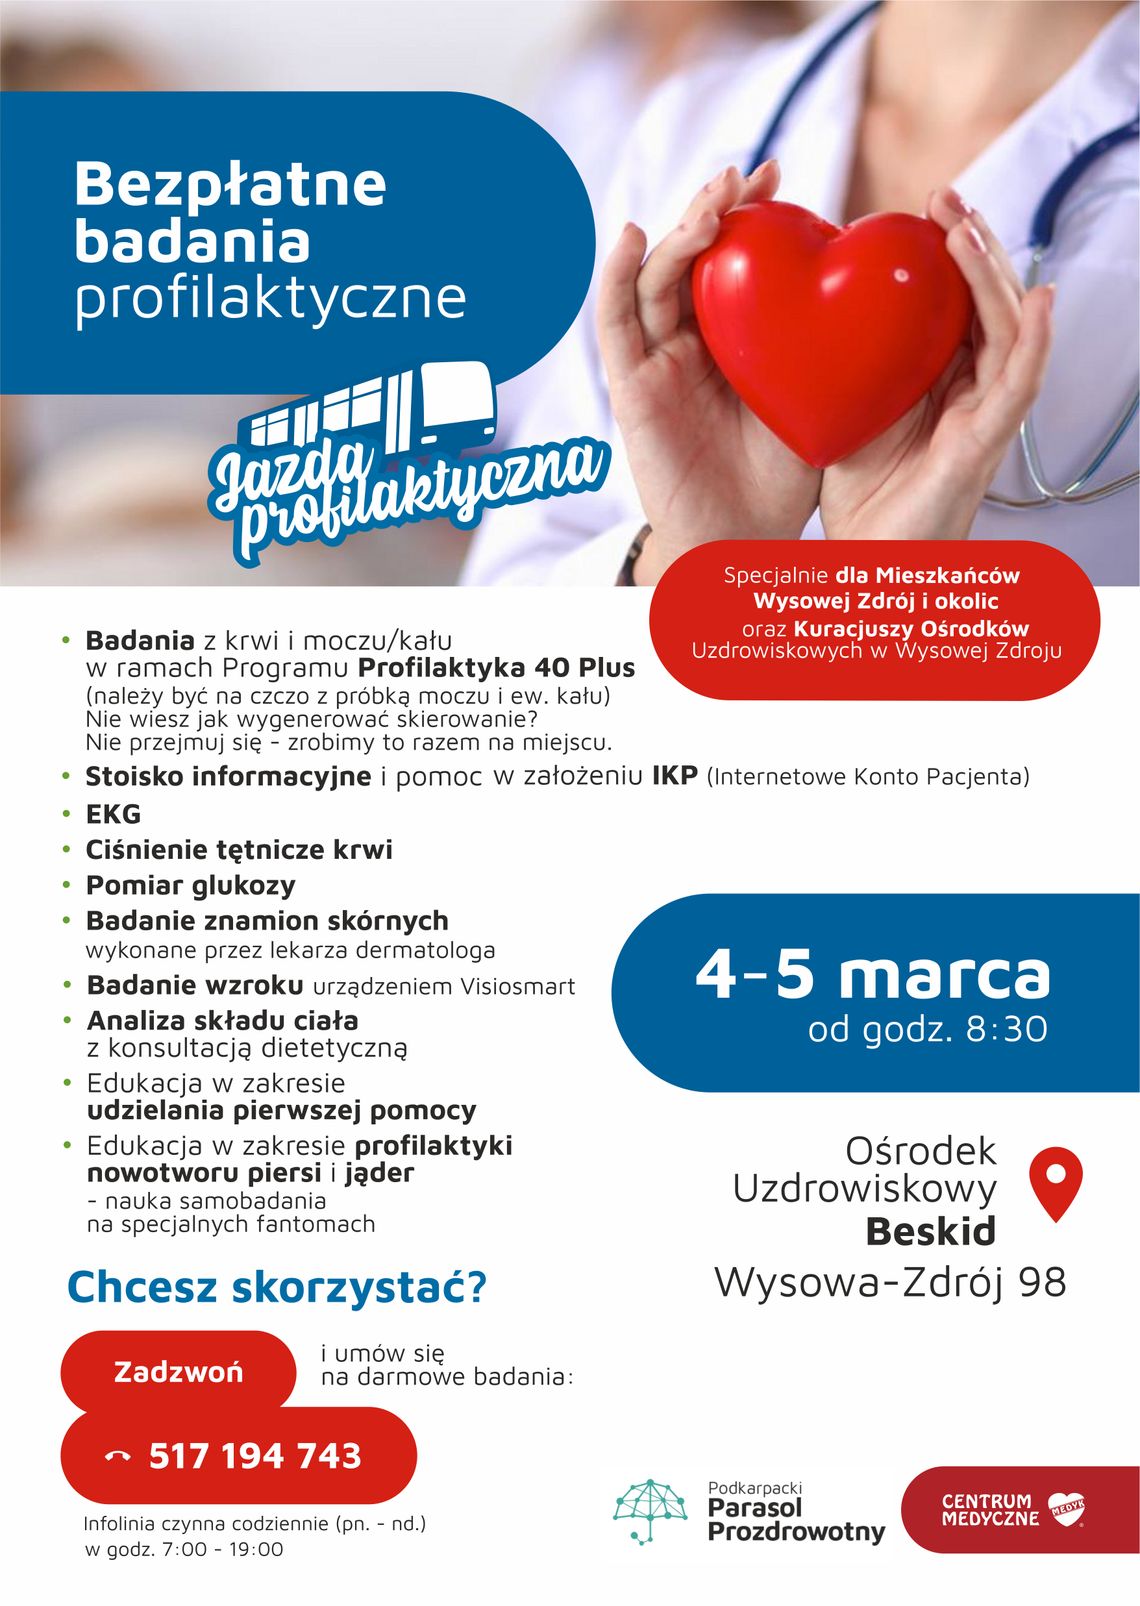 Bezpłatne badania profilaktyczne – Wysowa-Zdrój | halogorlice.info